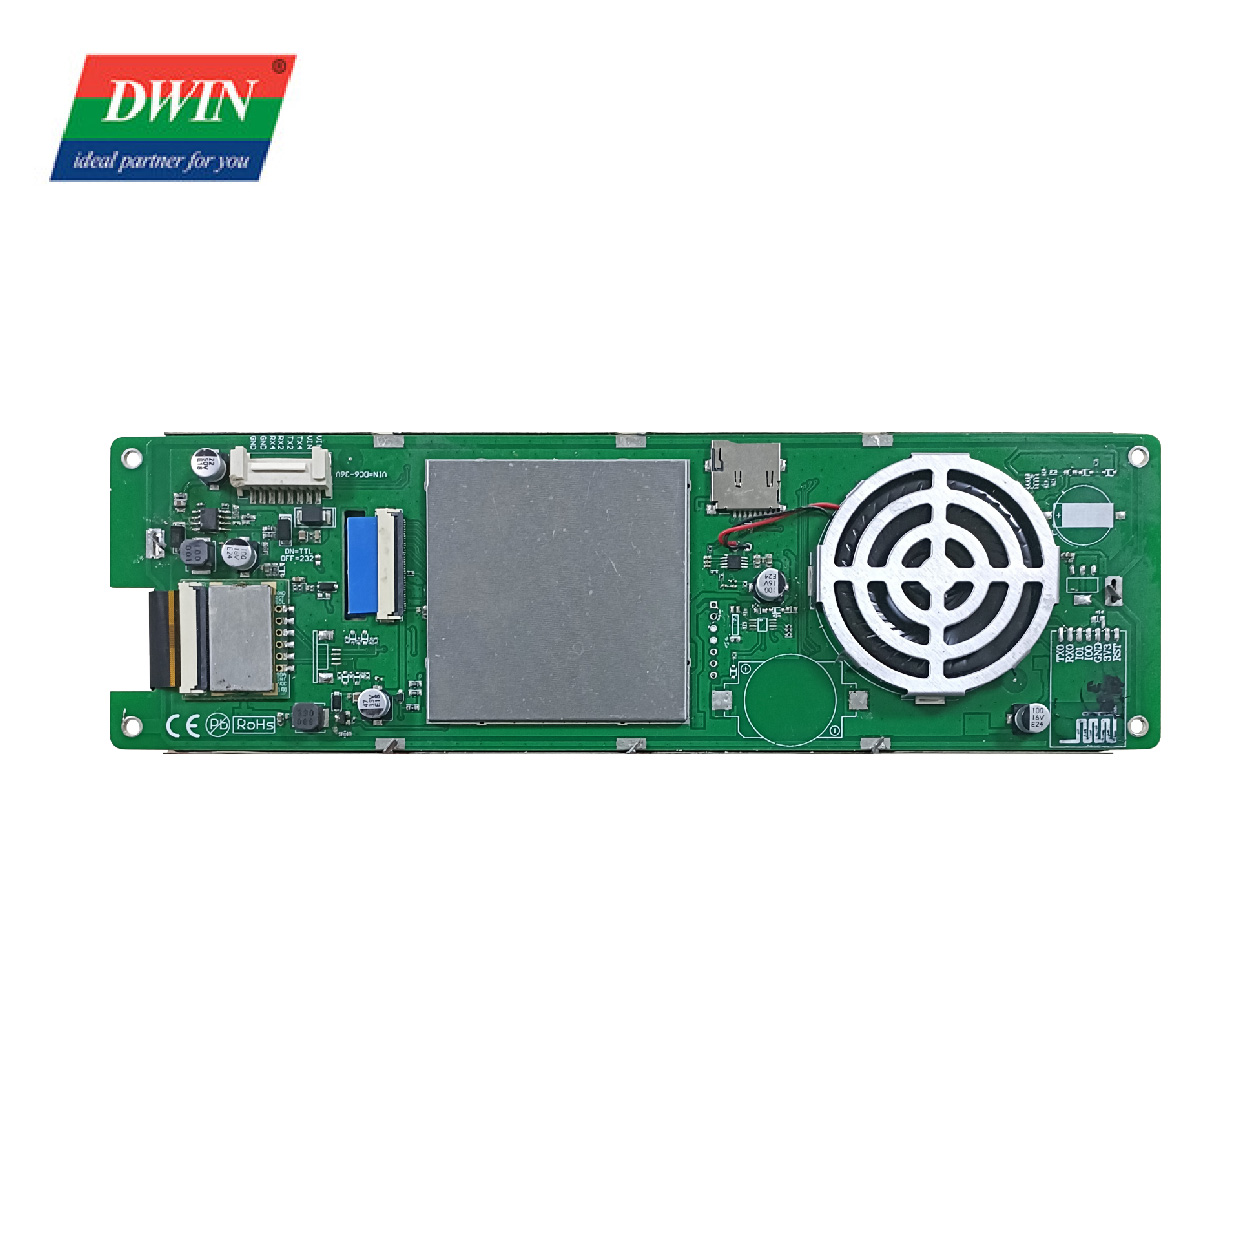 7.8 Inch Serial Port Bar LCD DMG12400C078_03W (Kelas Komersial)